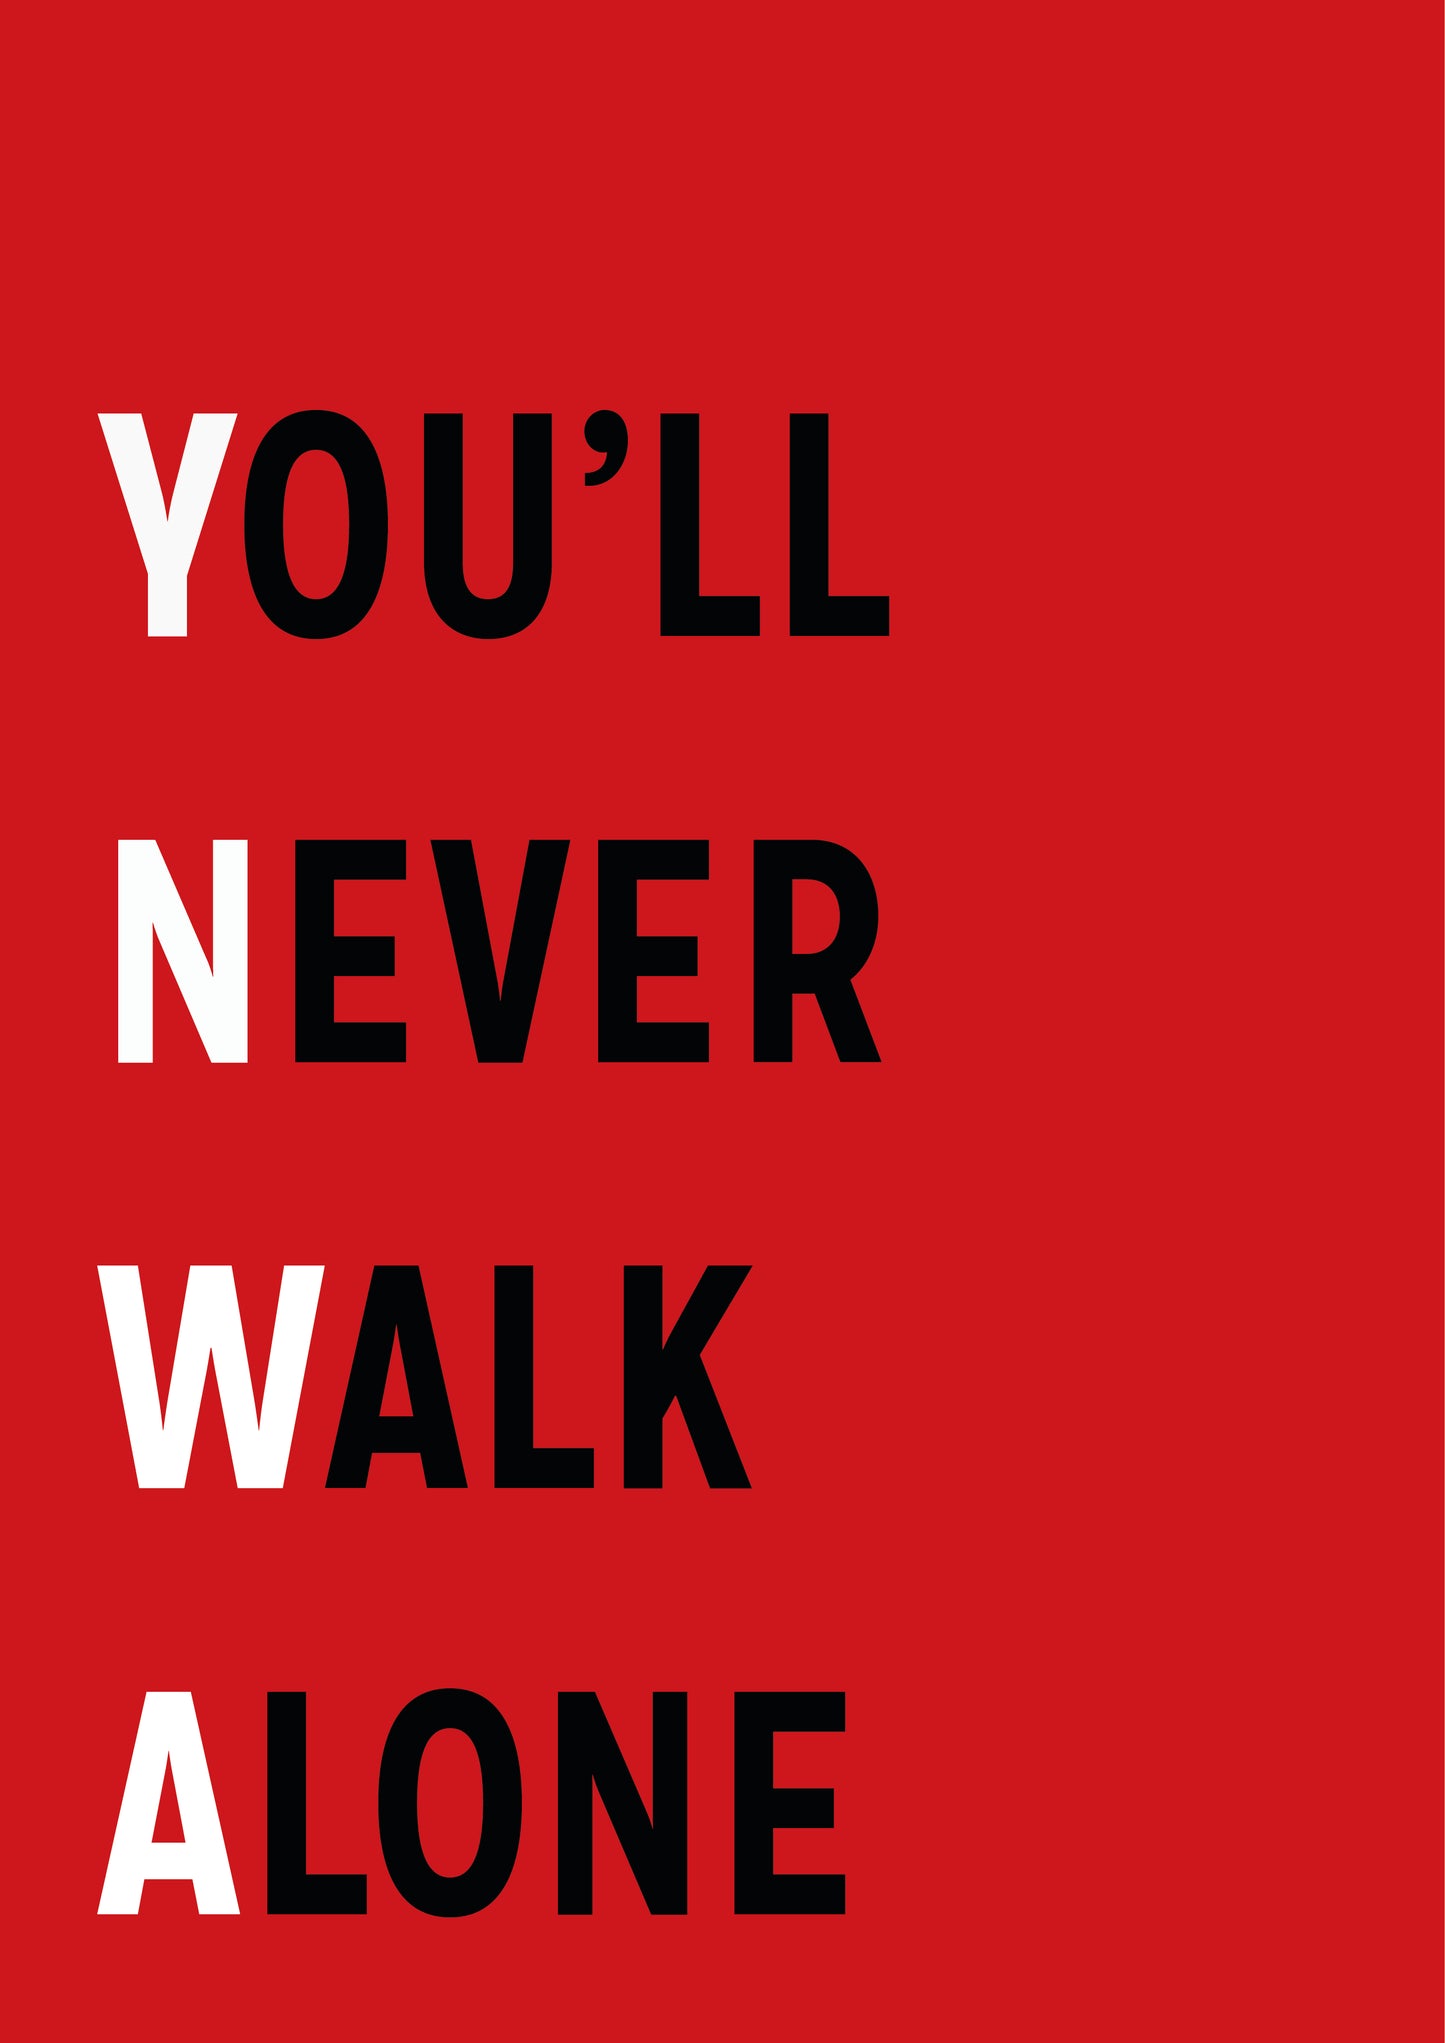 YNWA: You'll Never Walk Alone